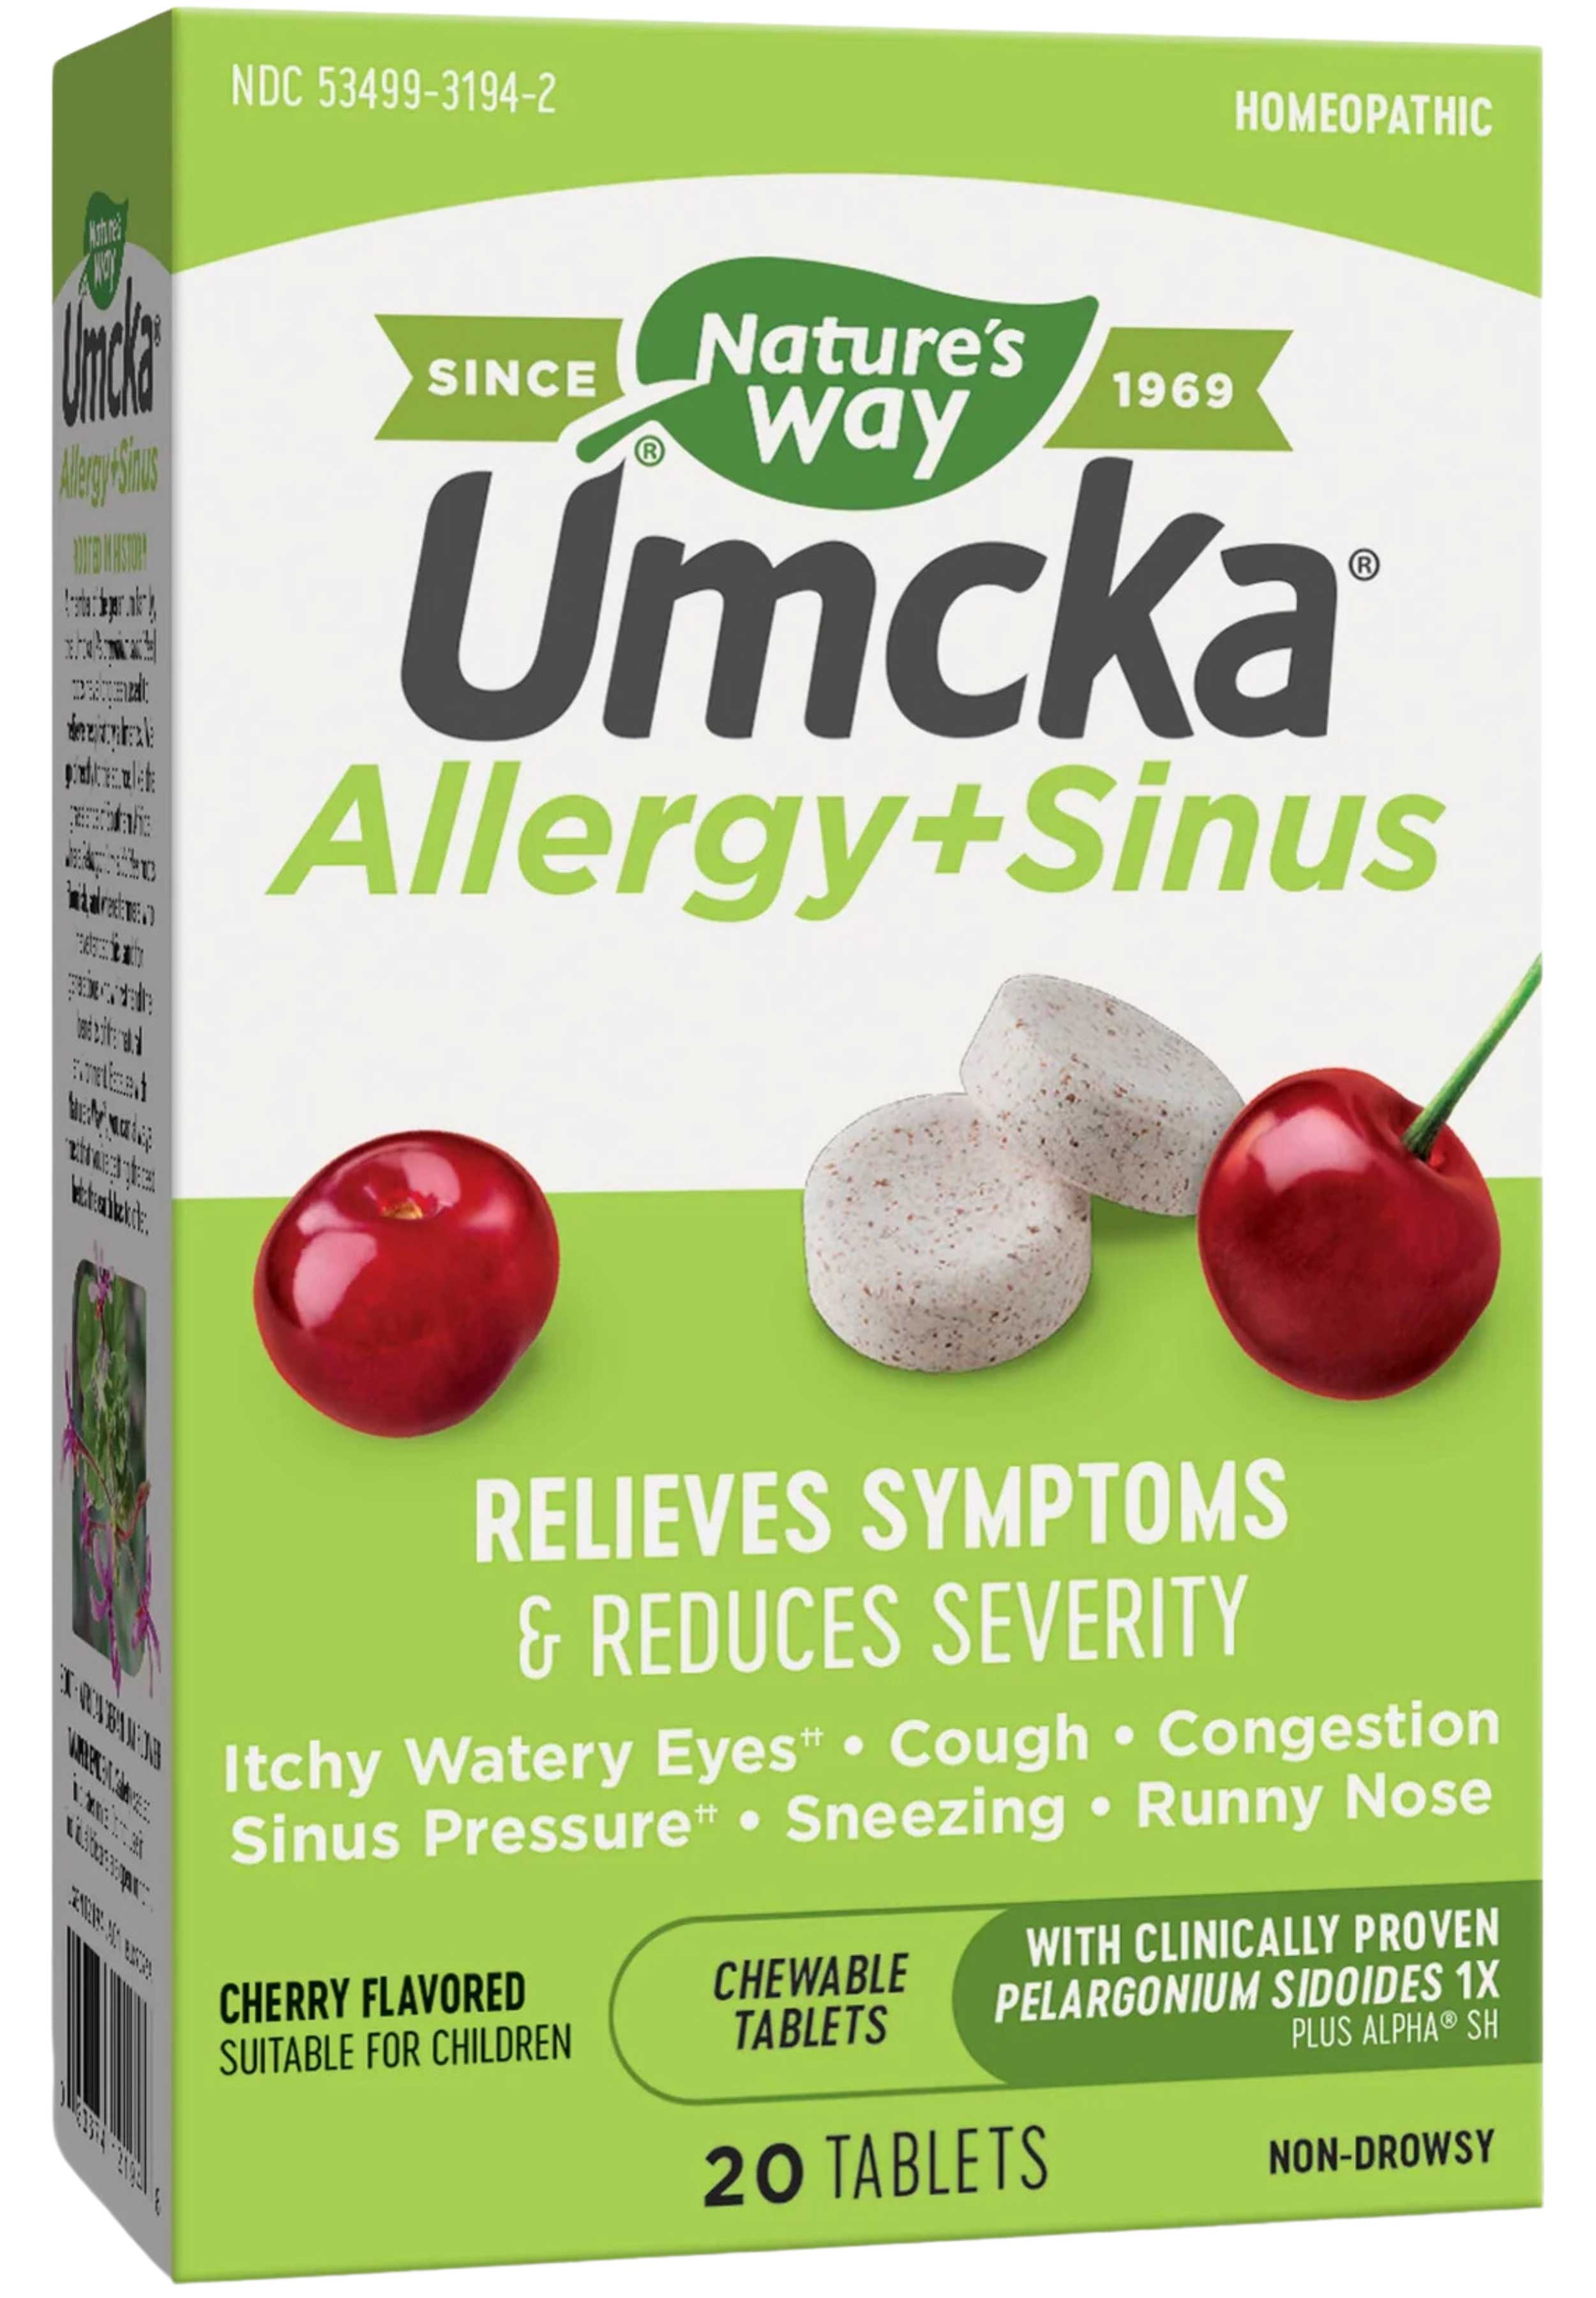 Nature's Way Umcka Allergy + Sinus